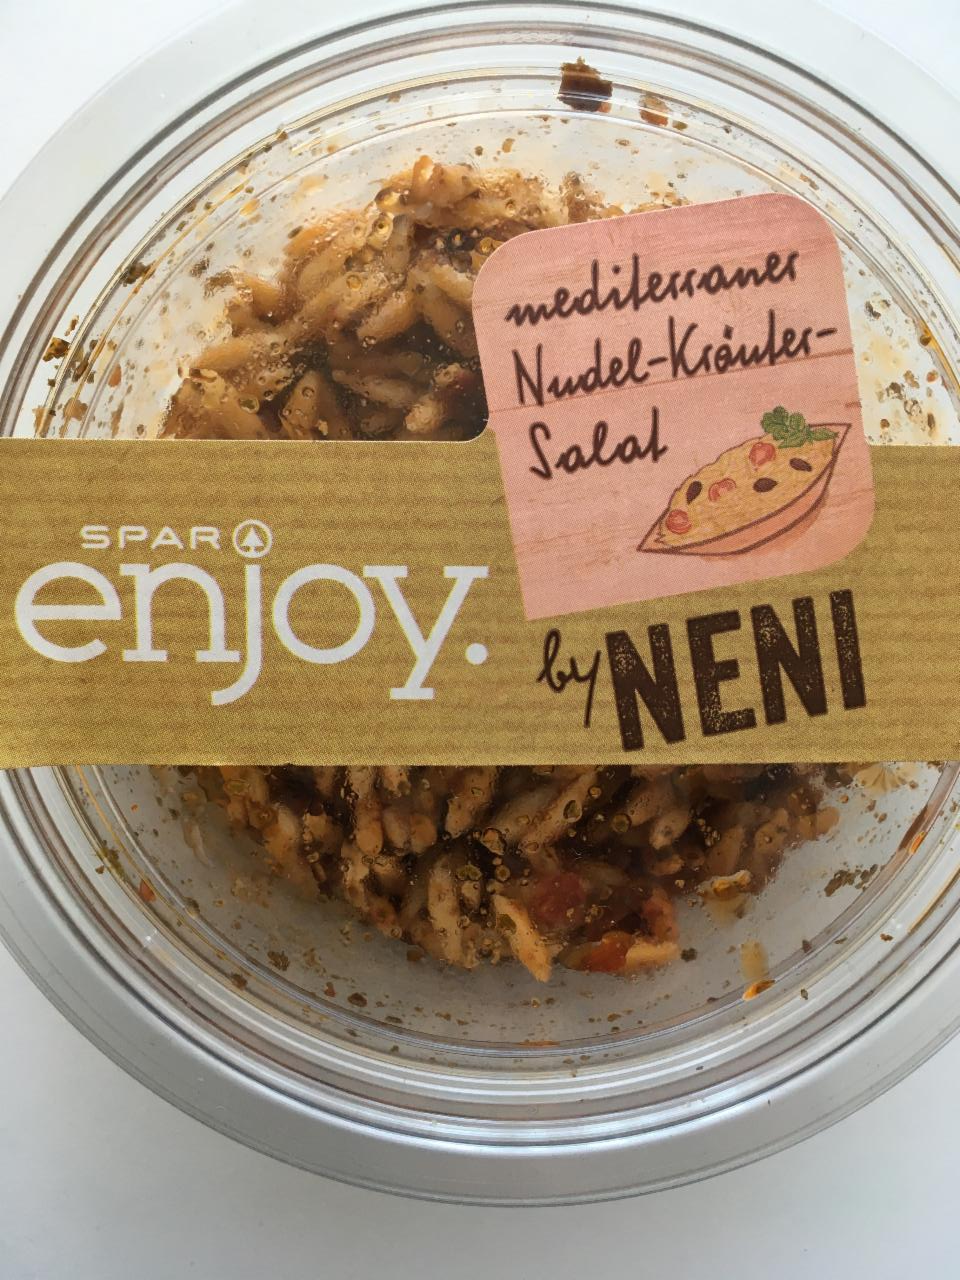 Fotografie - mediterraner Nudel-Kräuter-Salat Spar Enjoy by Neni